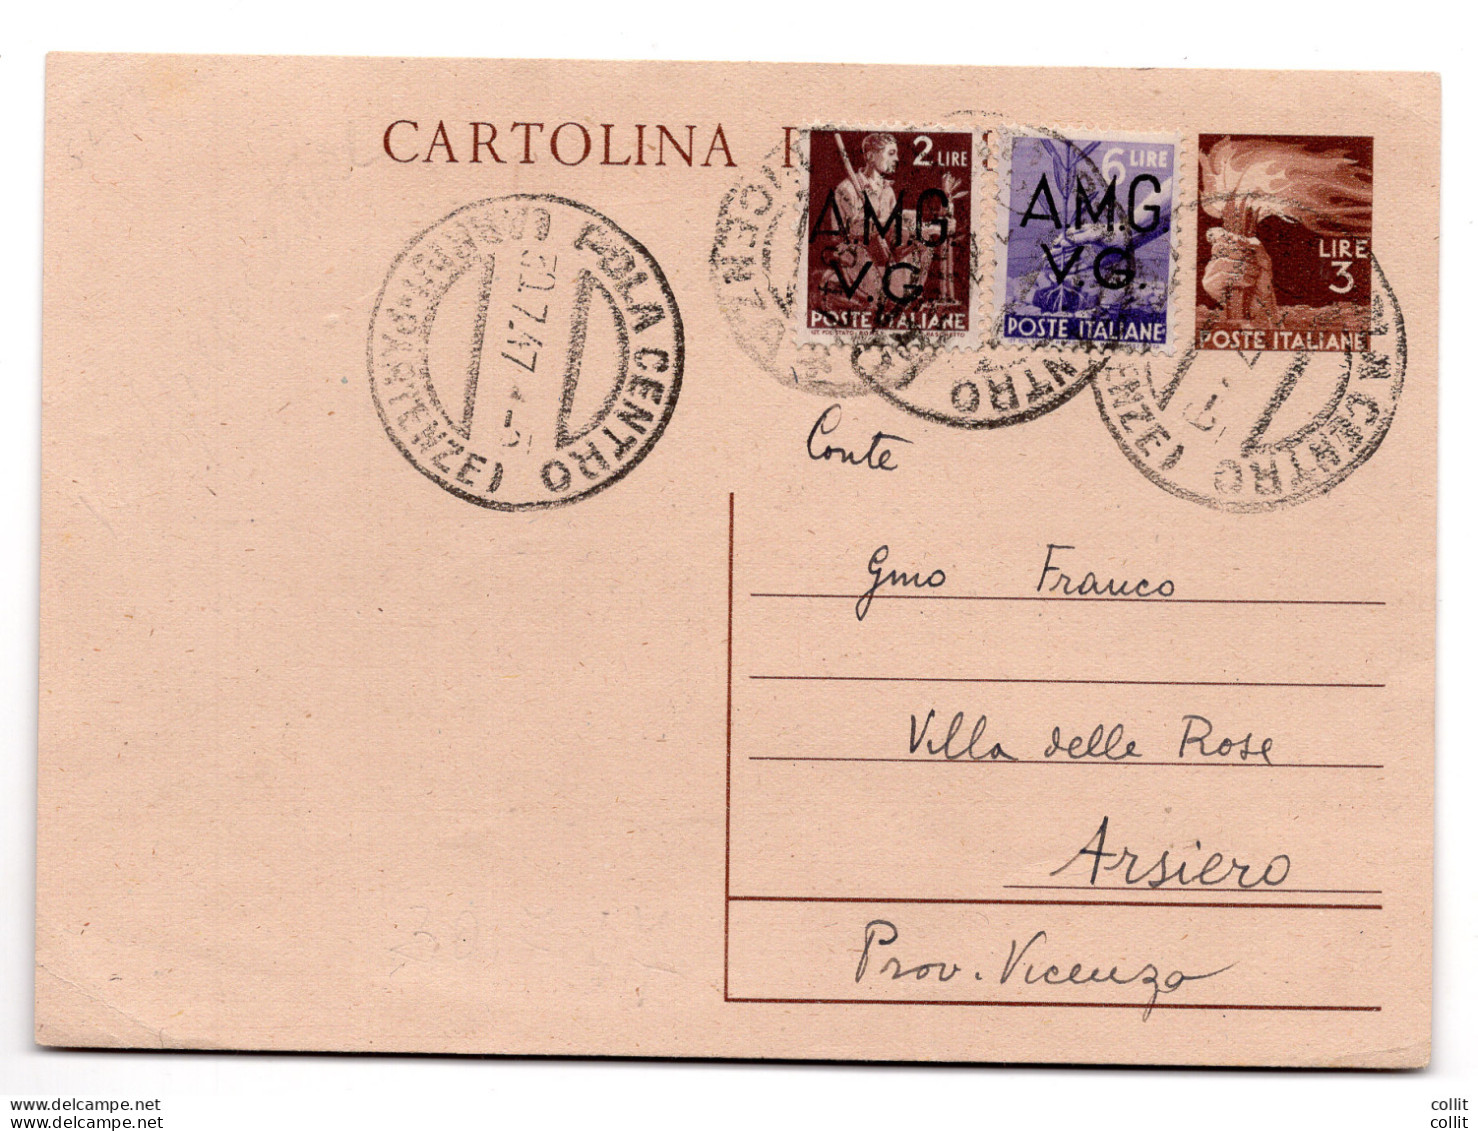 AMG.VG.-Democratica L.6 Cartolina Postale D'Italia Da L.3 Democratica - Ongebruikt